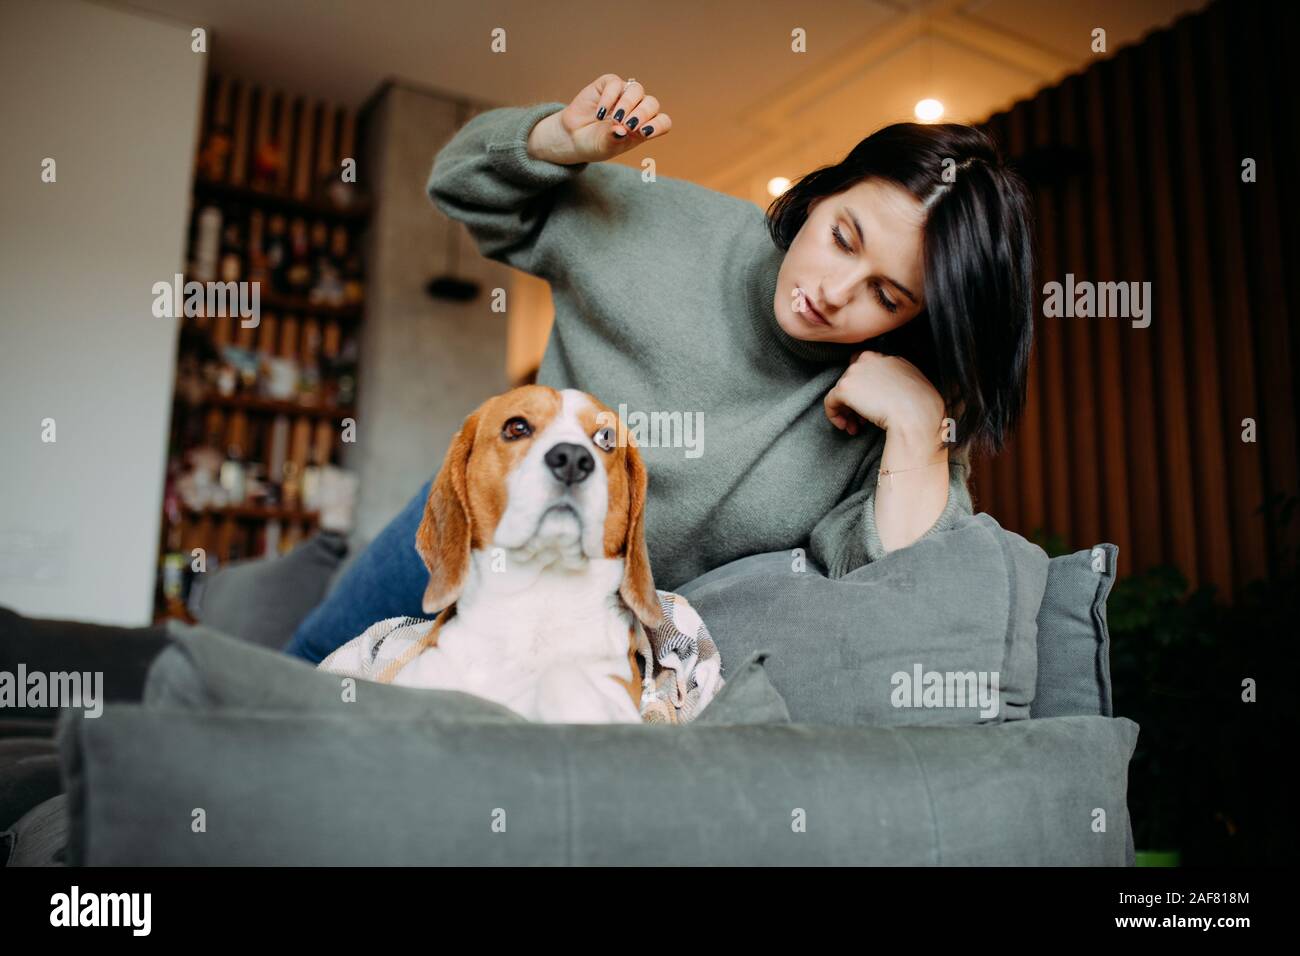 Una mujer yace en un sofá junto a un perro Beagle y juega con él. Foto de stock